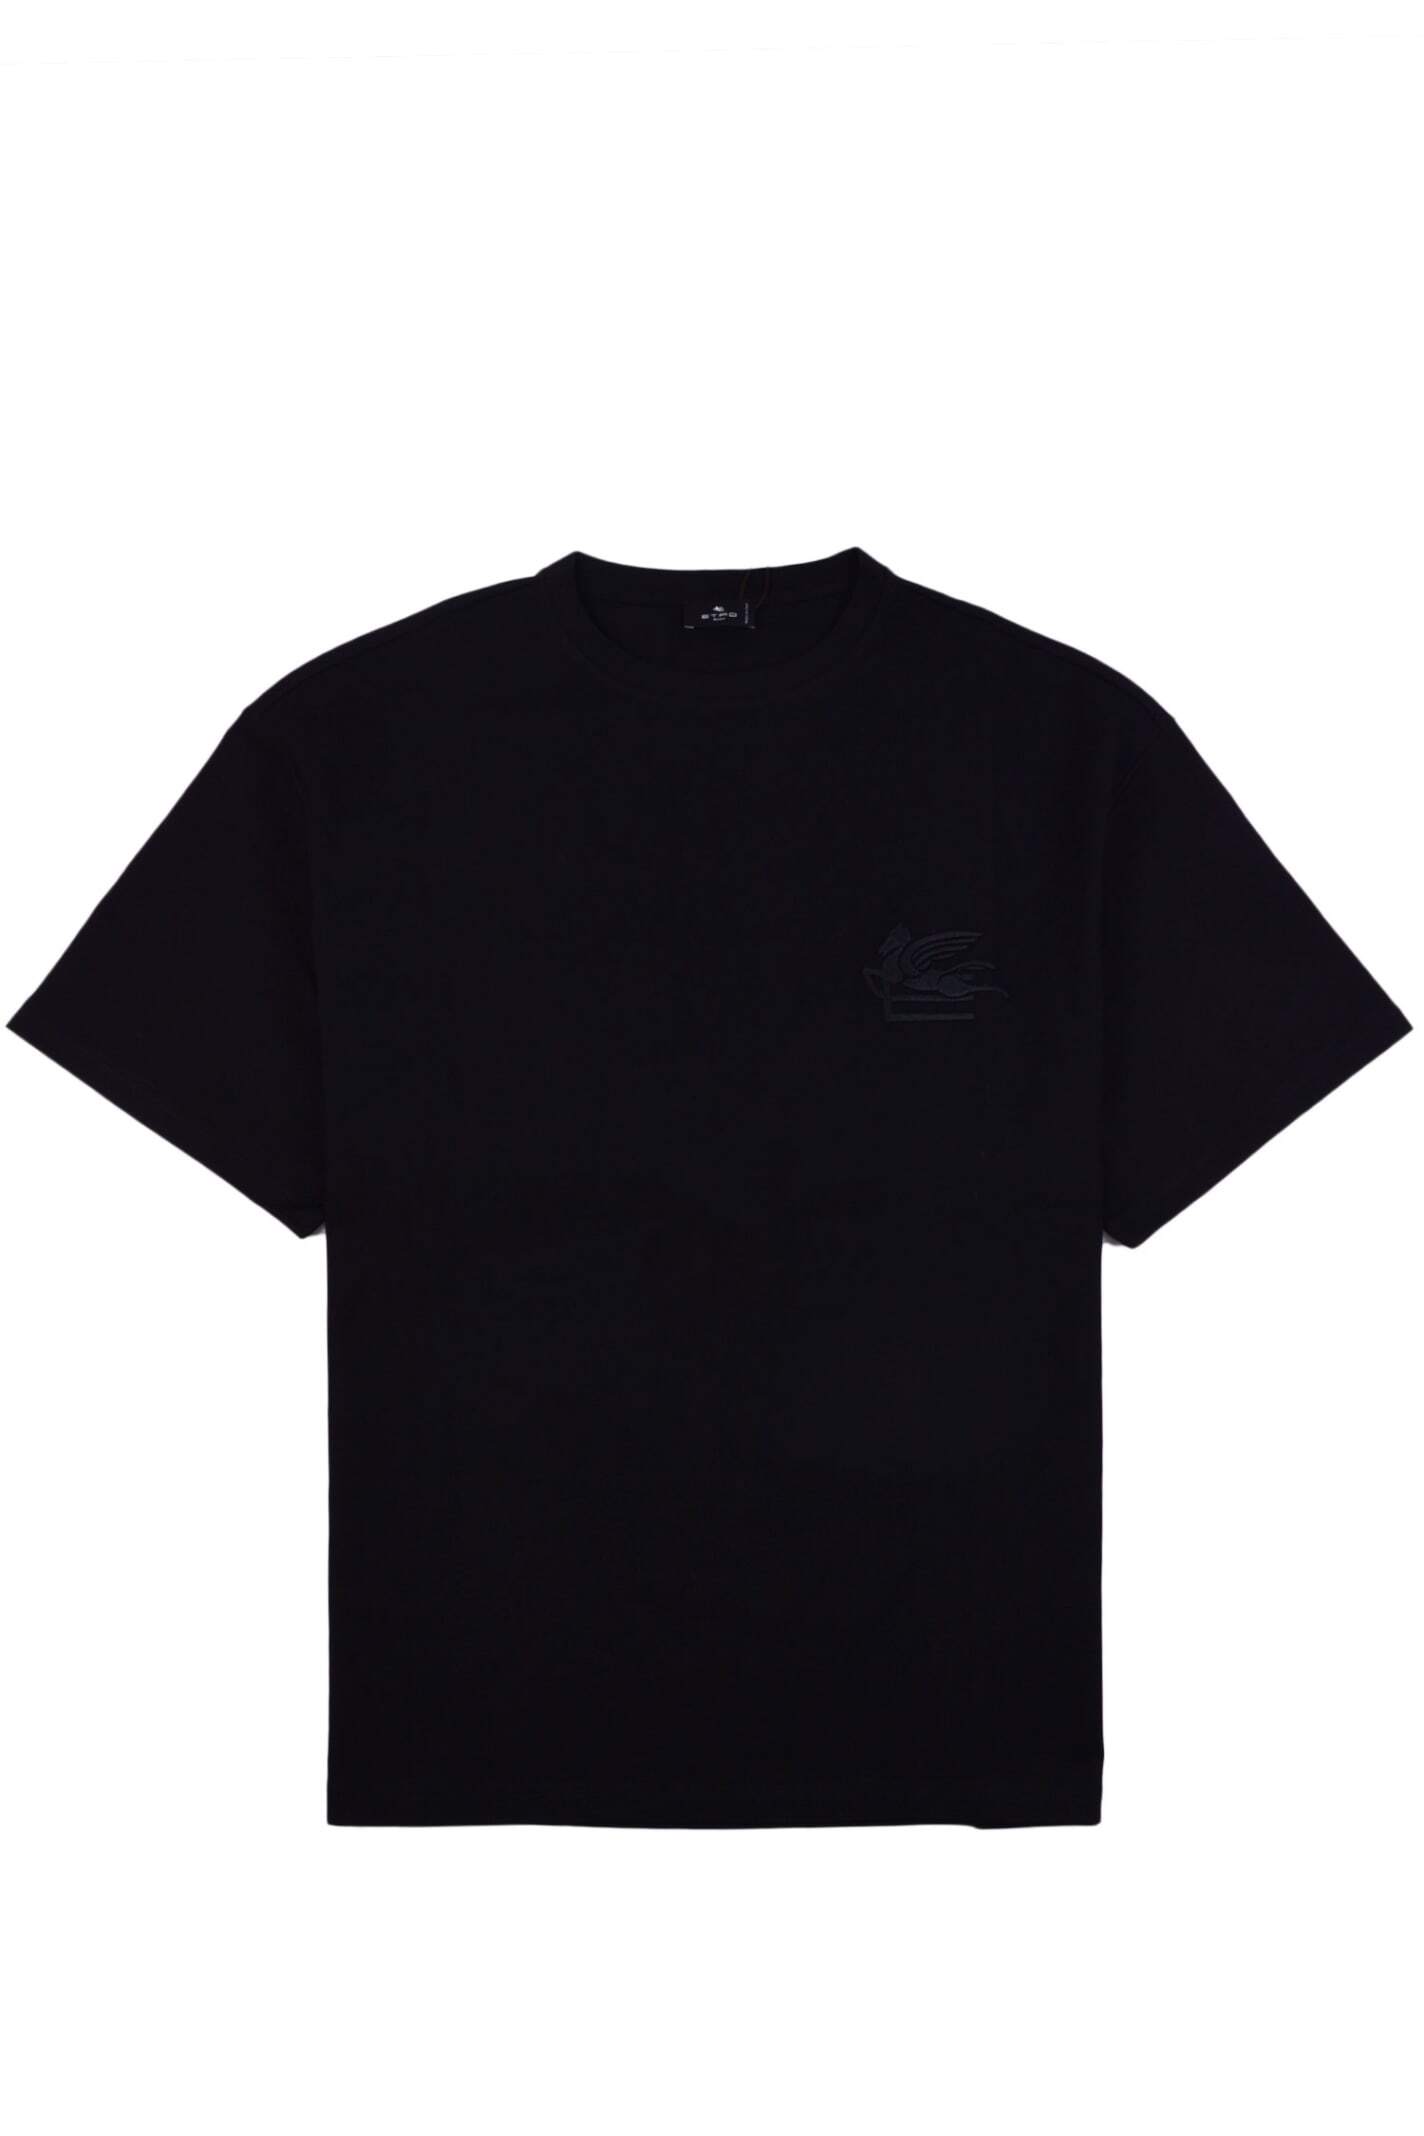 ETRO エトロ ブラック Black Tシャツ メンズ 秋冬2023 1Y5259730 0001 【ラッピング無料】 iaのサムネイル